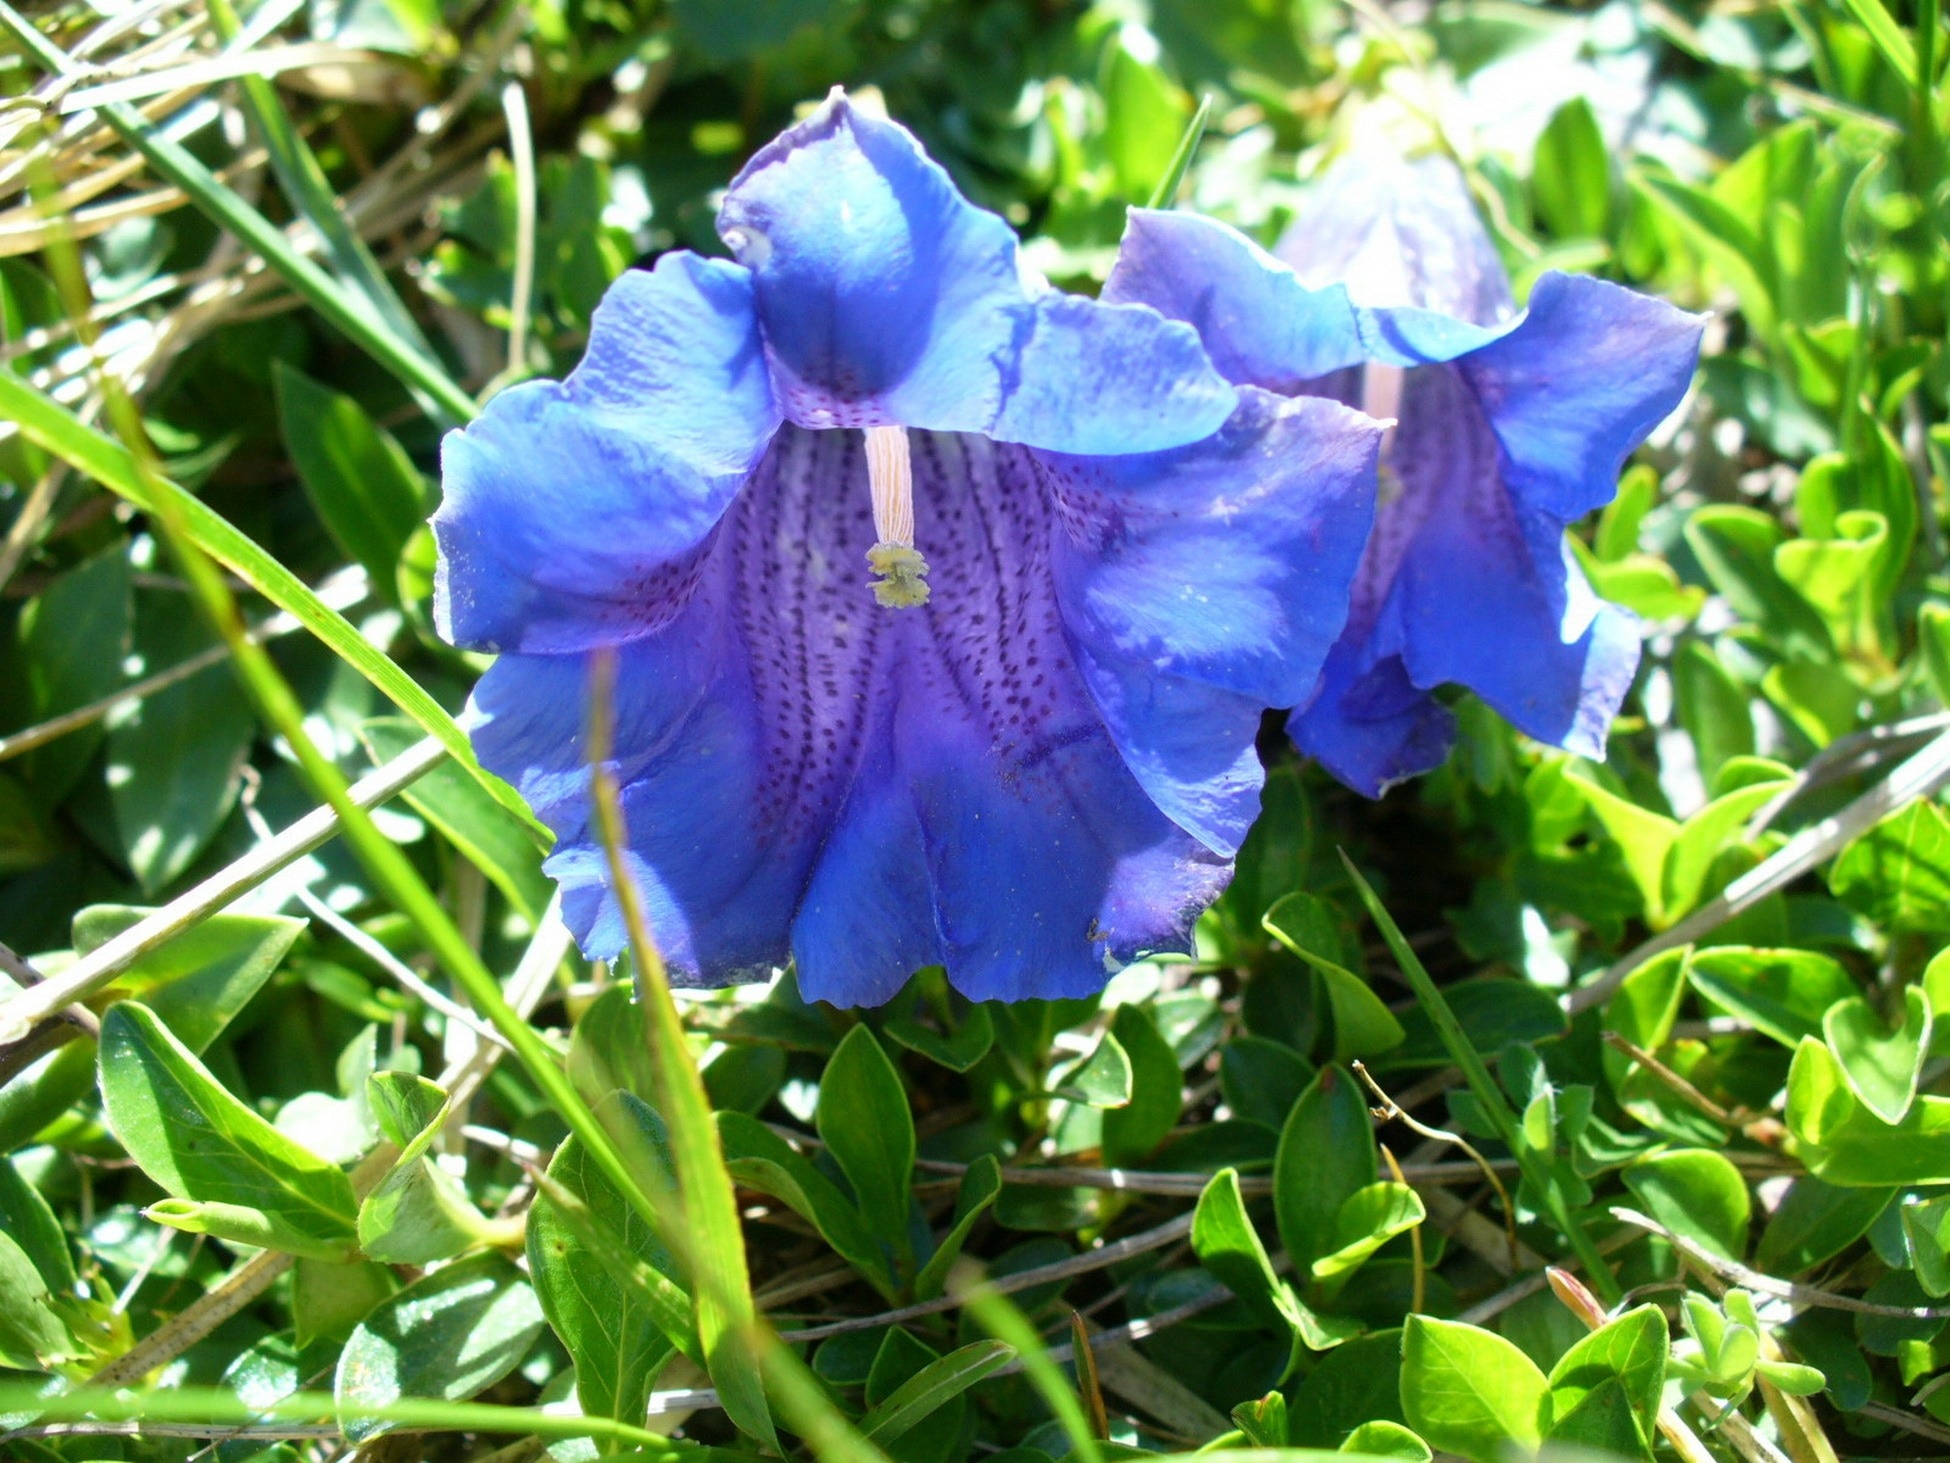 2 blue and purple petaled flowers